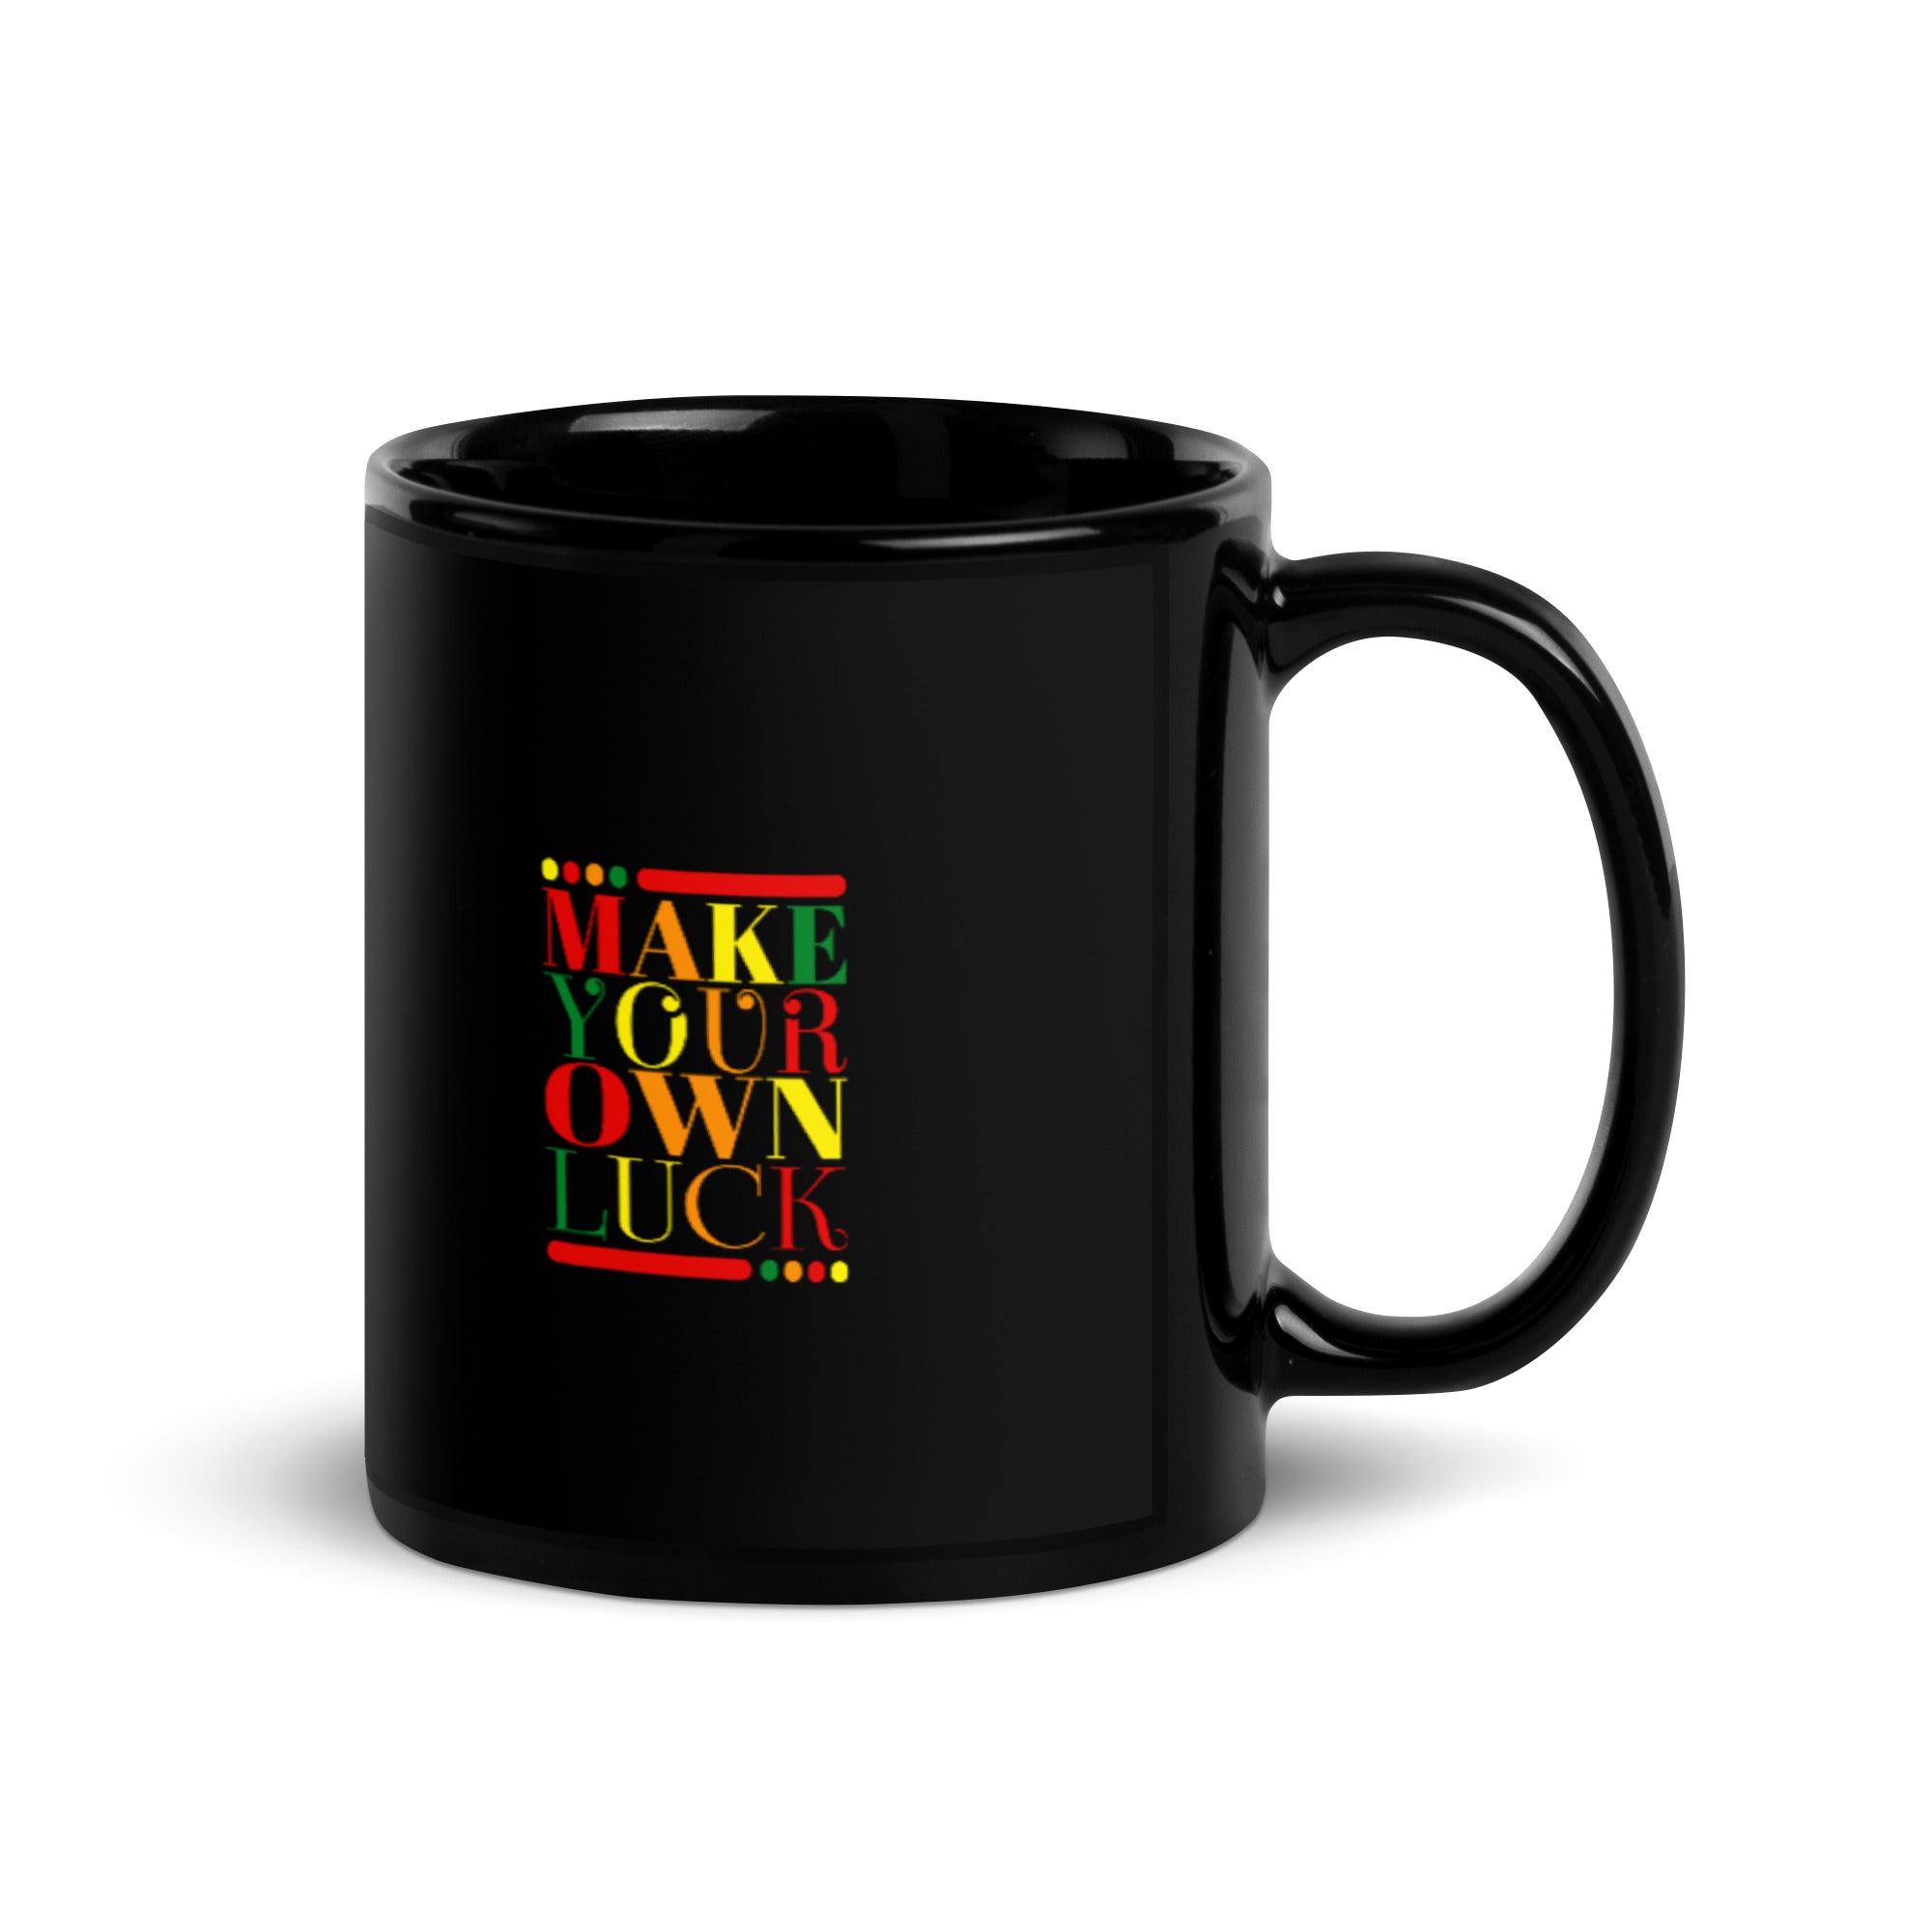 Make Your Own Luck - Black Glossy Mug